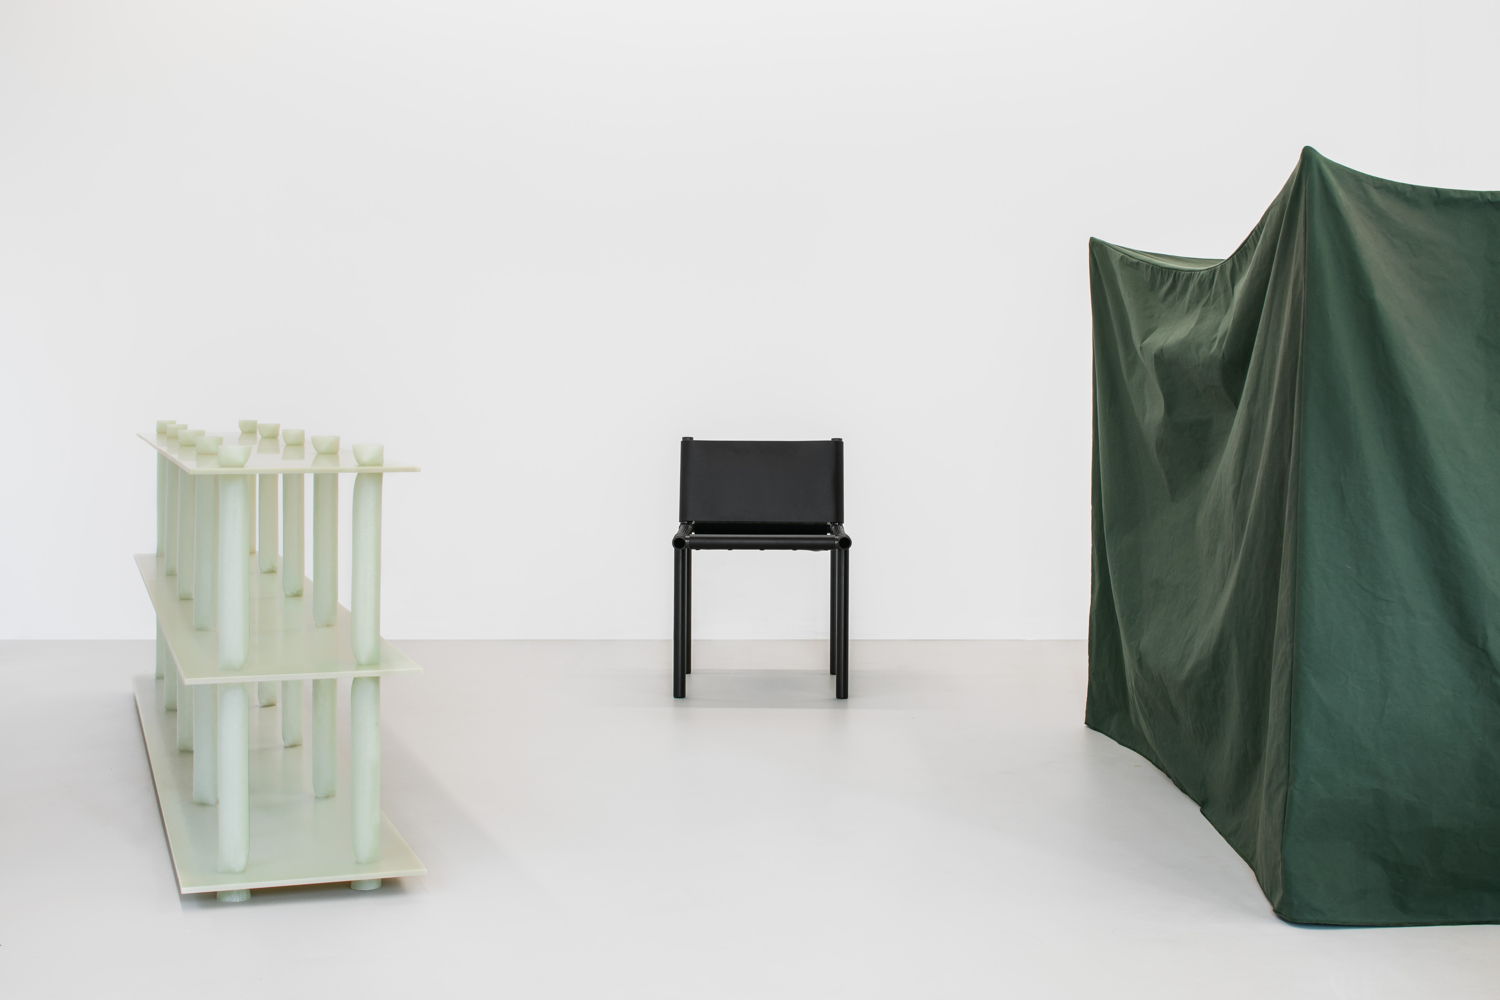 FS (Fiberglass Stack), CTC1 (Carbon Tube Chair 1), CTS (Concave Textile Shape). Image by Jeroen Verrecht